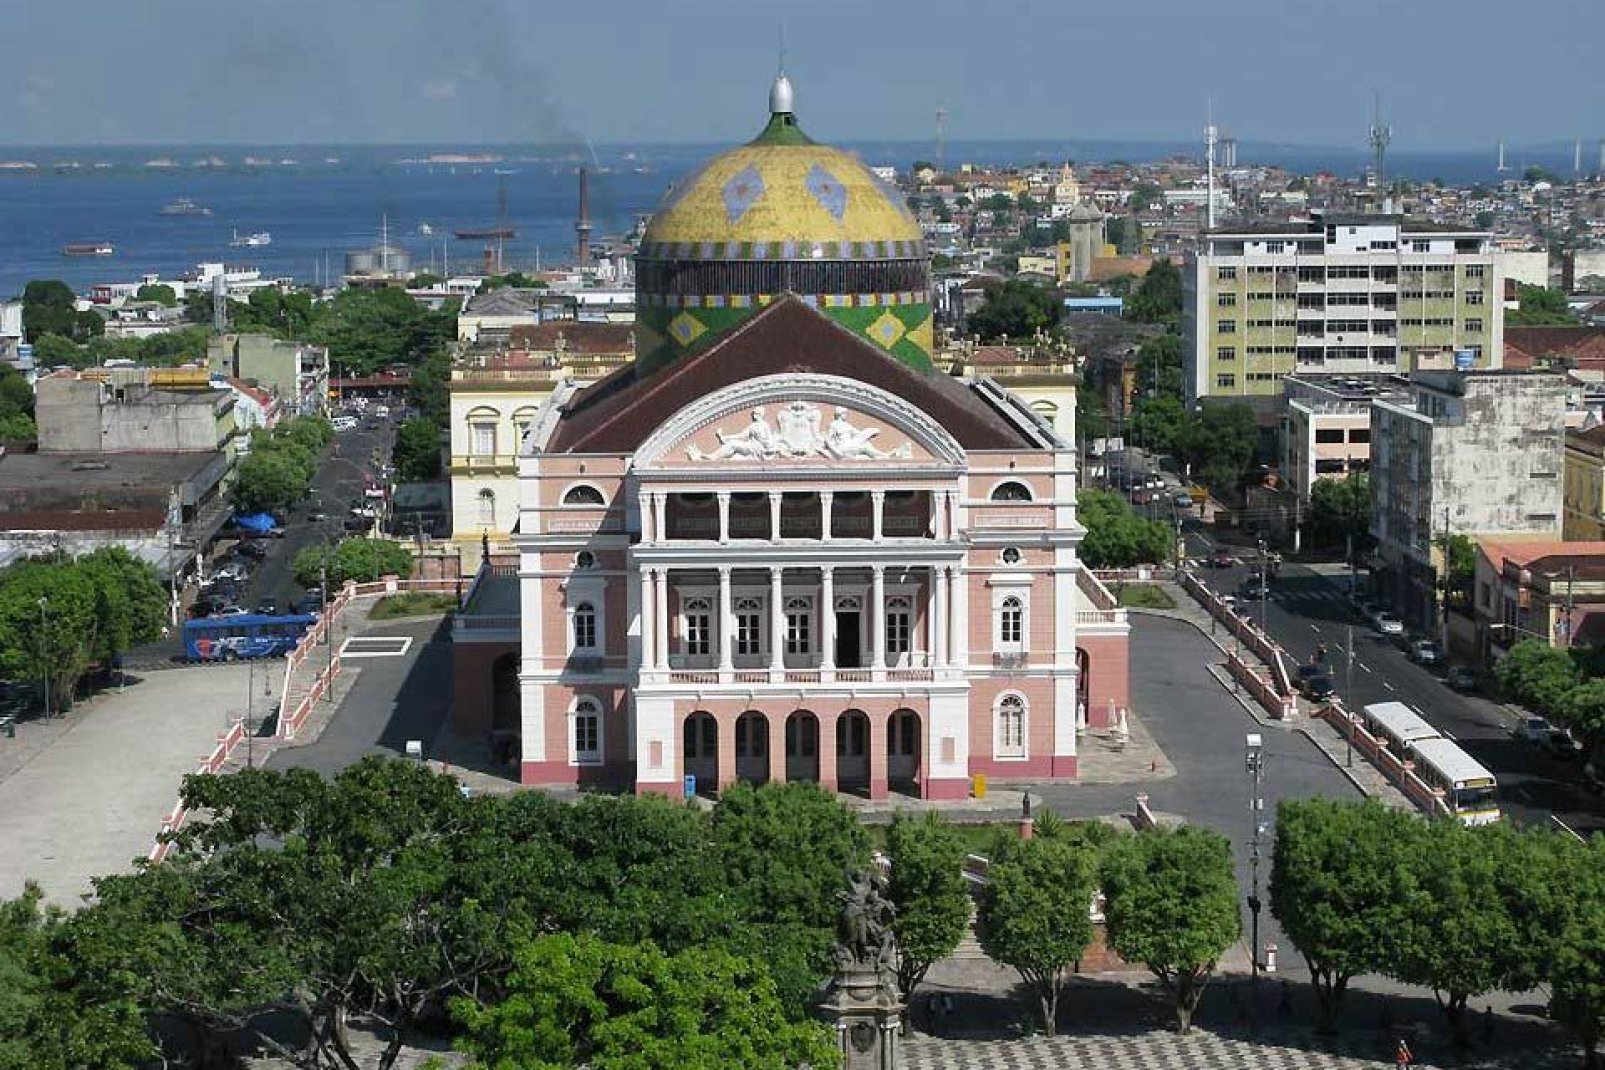 Das Teatro Amazonas wurde 1896 gebaut und beheimatet nunmehr ein Kulturzentrum. Das Gebäude im Renaissance-Stil ist umrahmt von Treppen und Säulen im neoklassischen Stil.